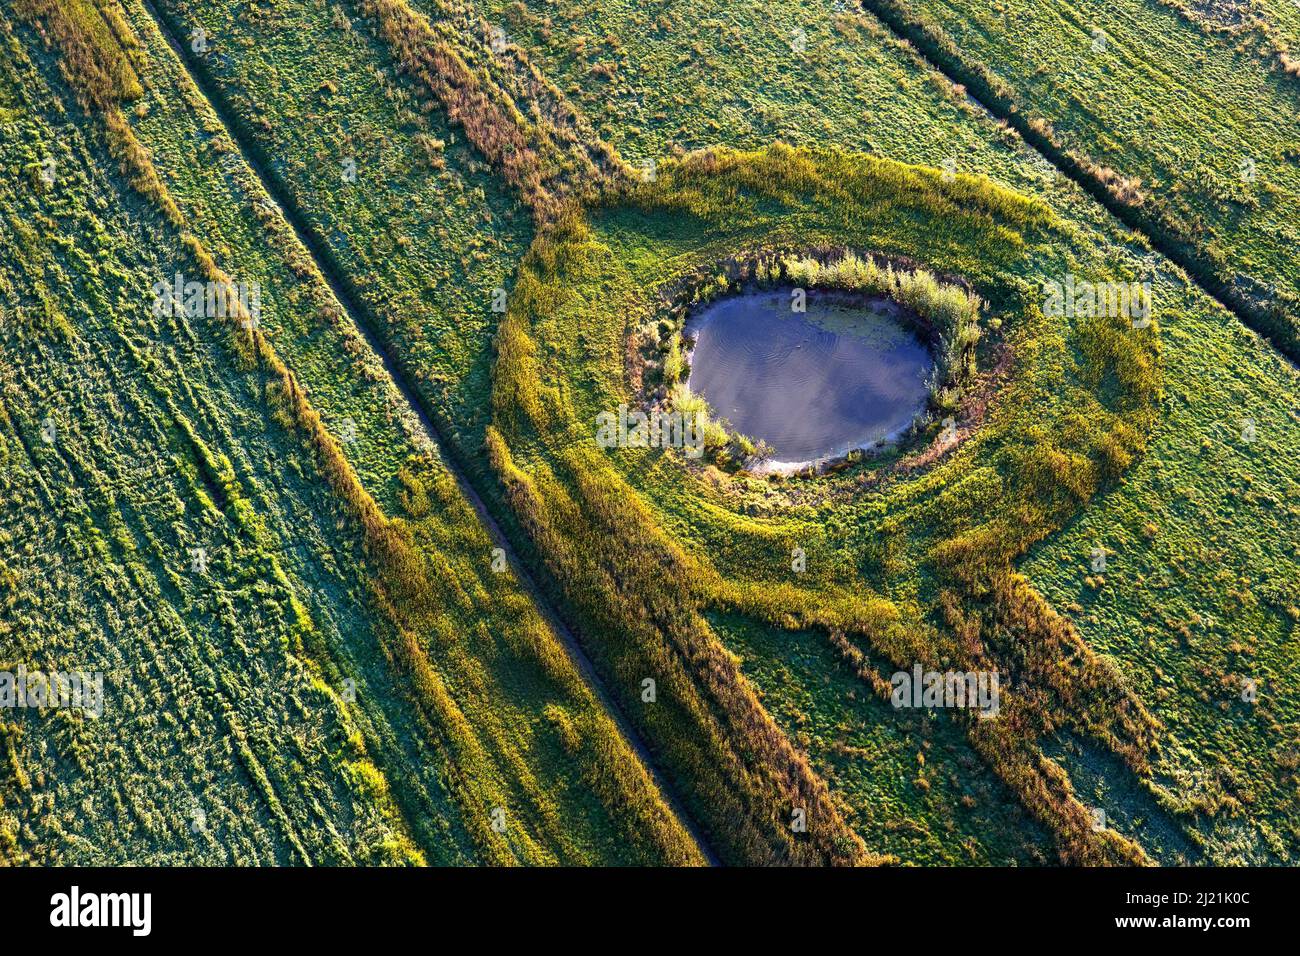 Waterhole in a field, aerial view, Belgium, Flanders Stock Photo